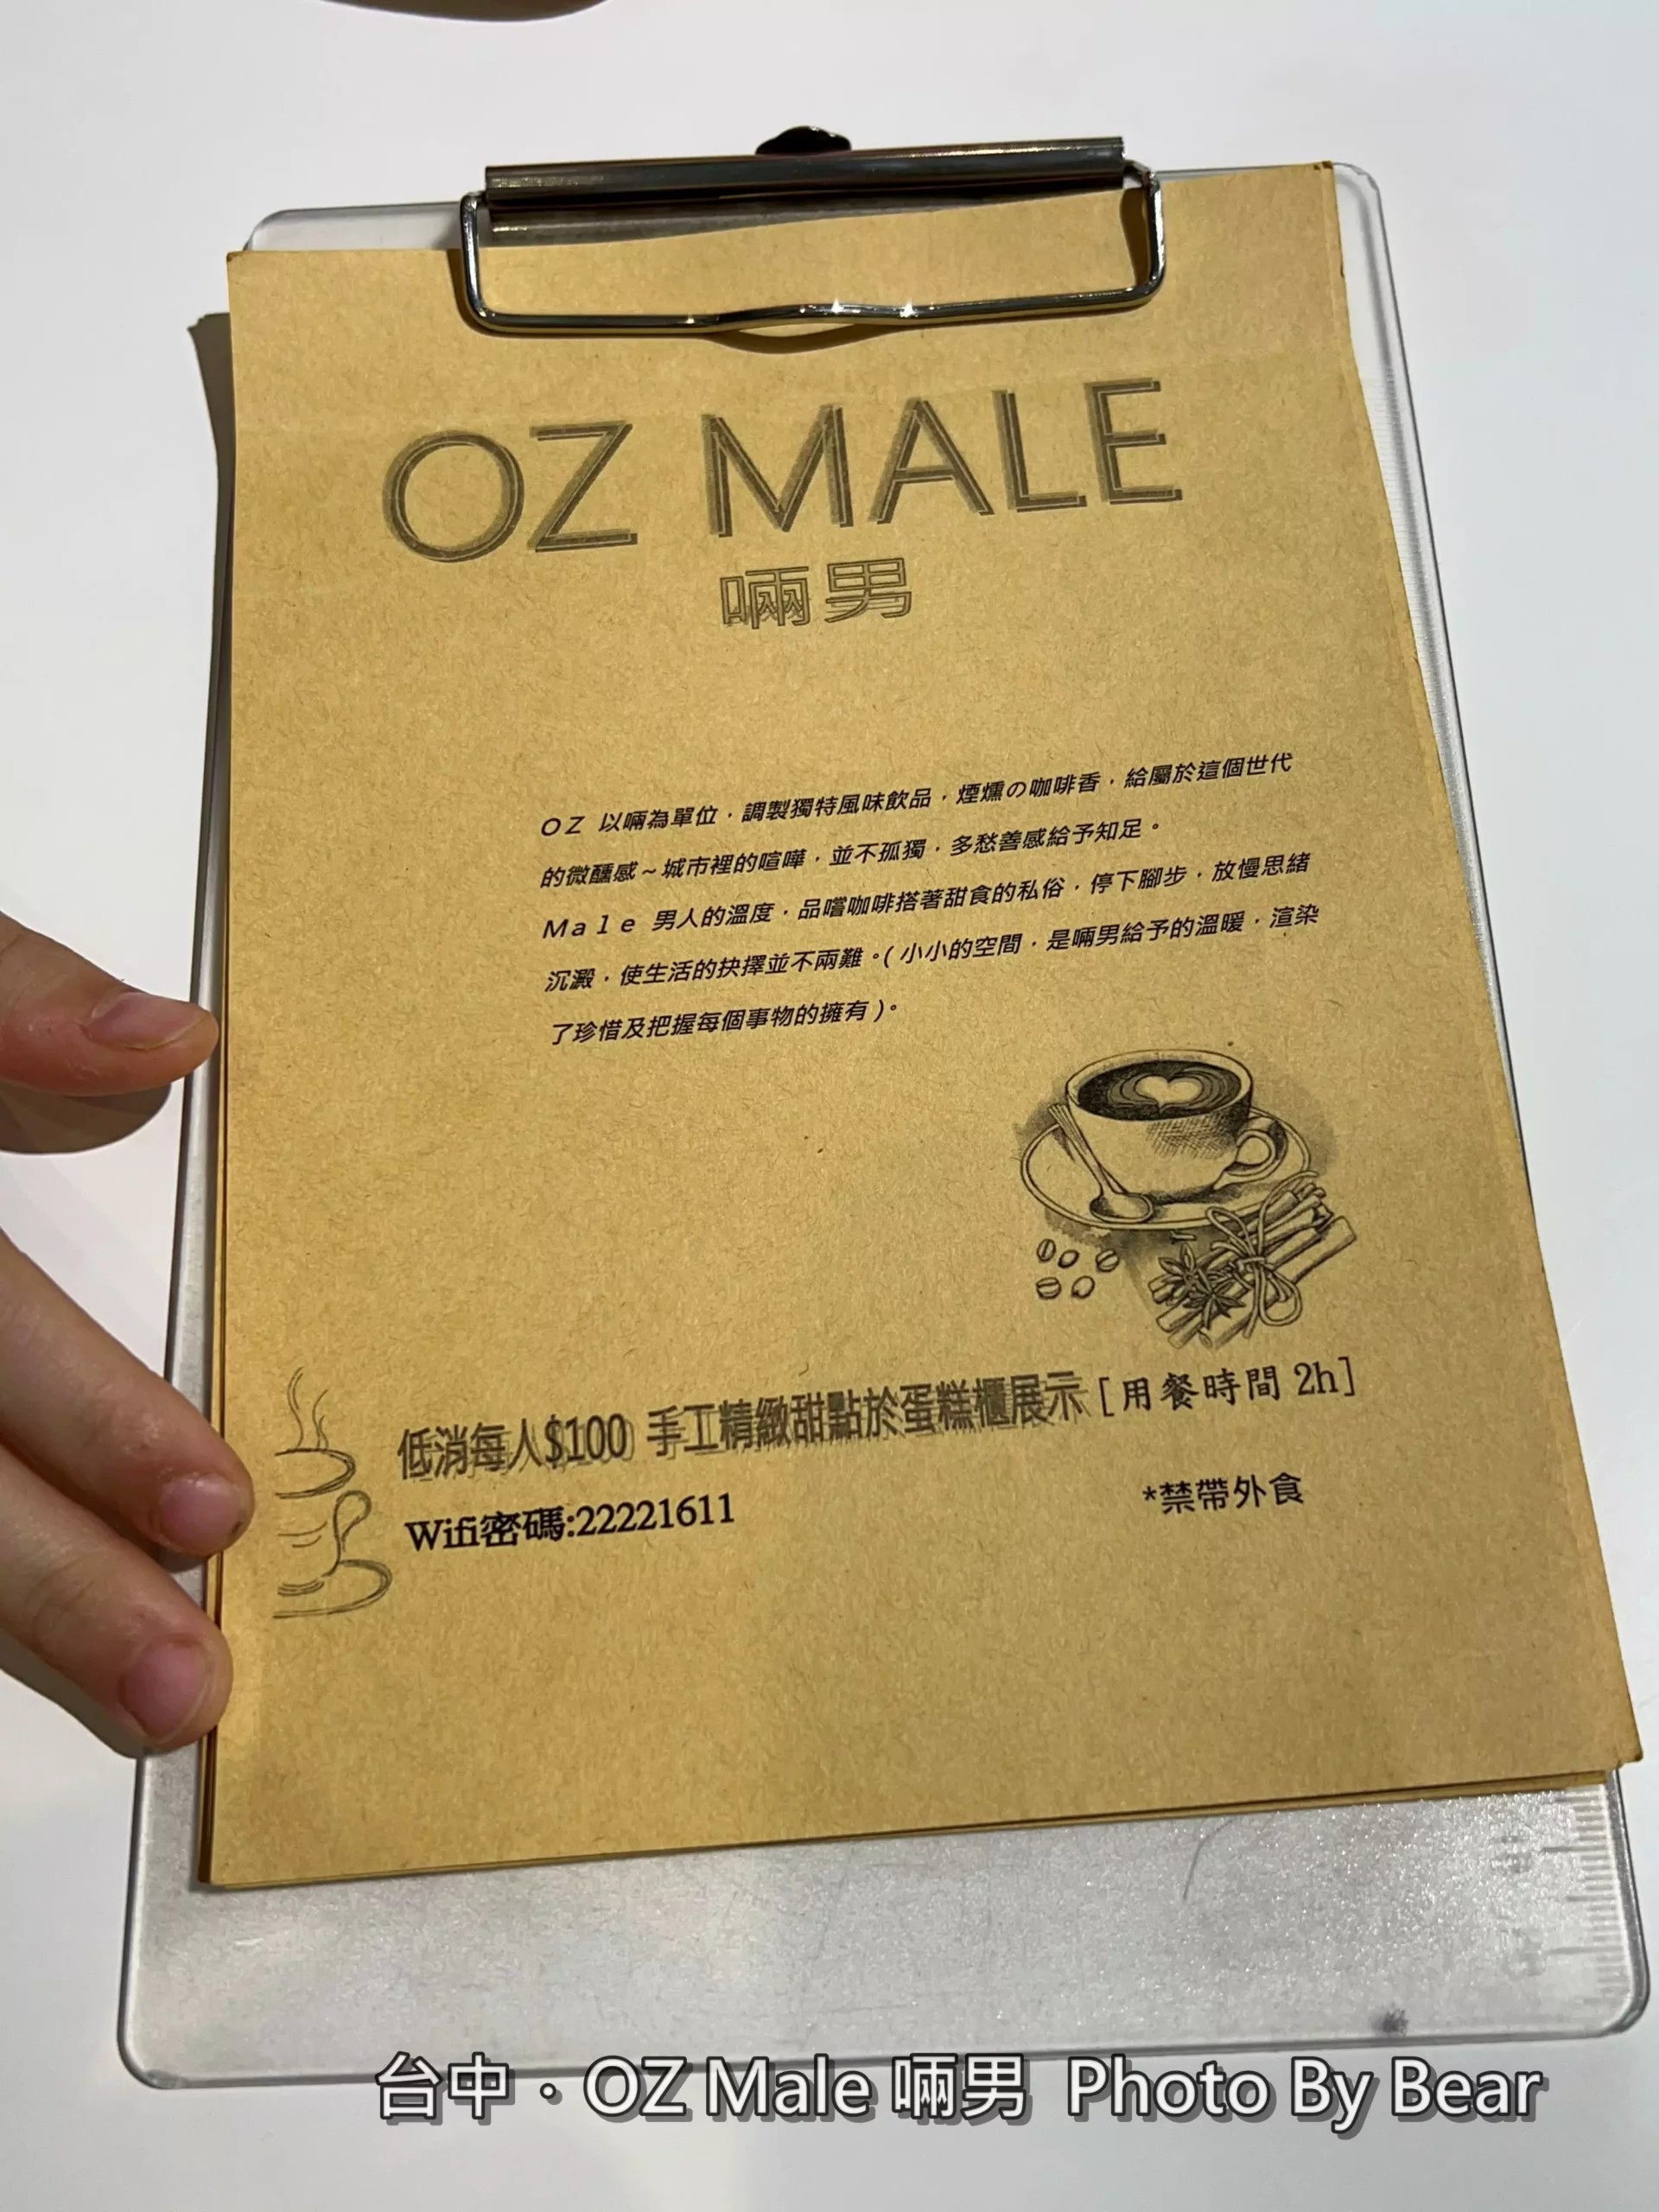 【台中】「啢男咖啡OZ Male Cafe．大男孩經營的司康與肉桂捲專賣店（手作甜點/甜塔/鹹派/下午茶）」